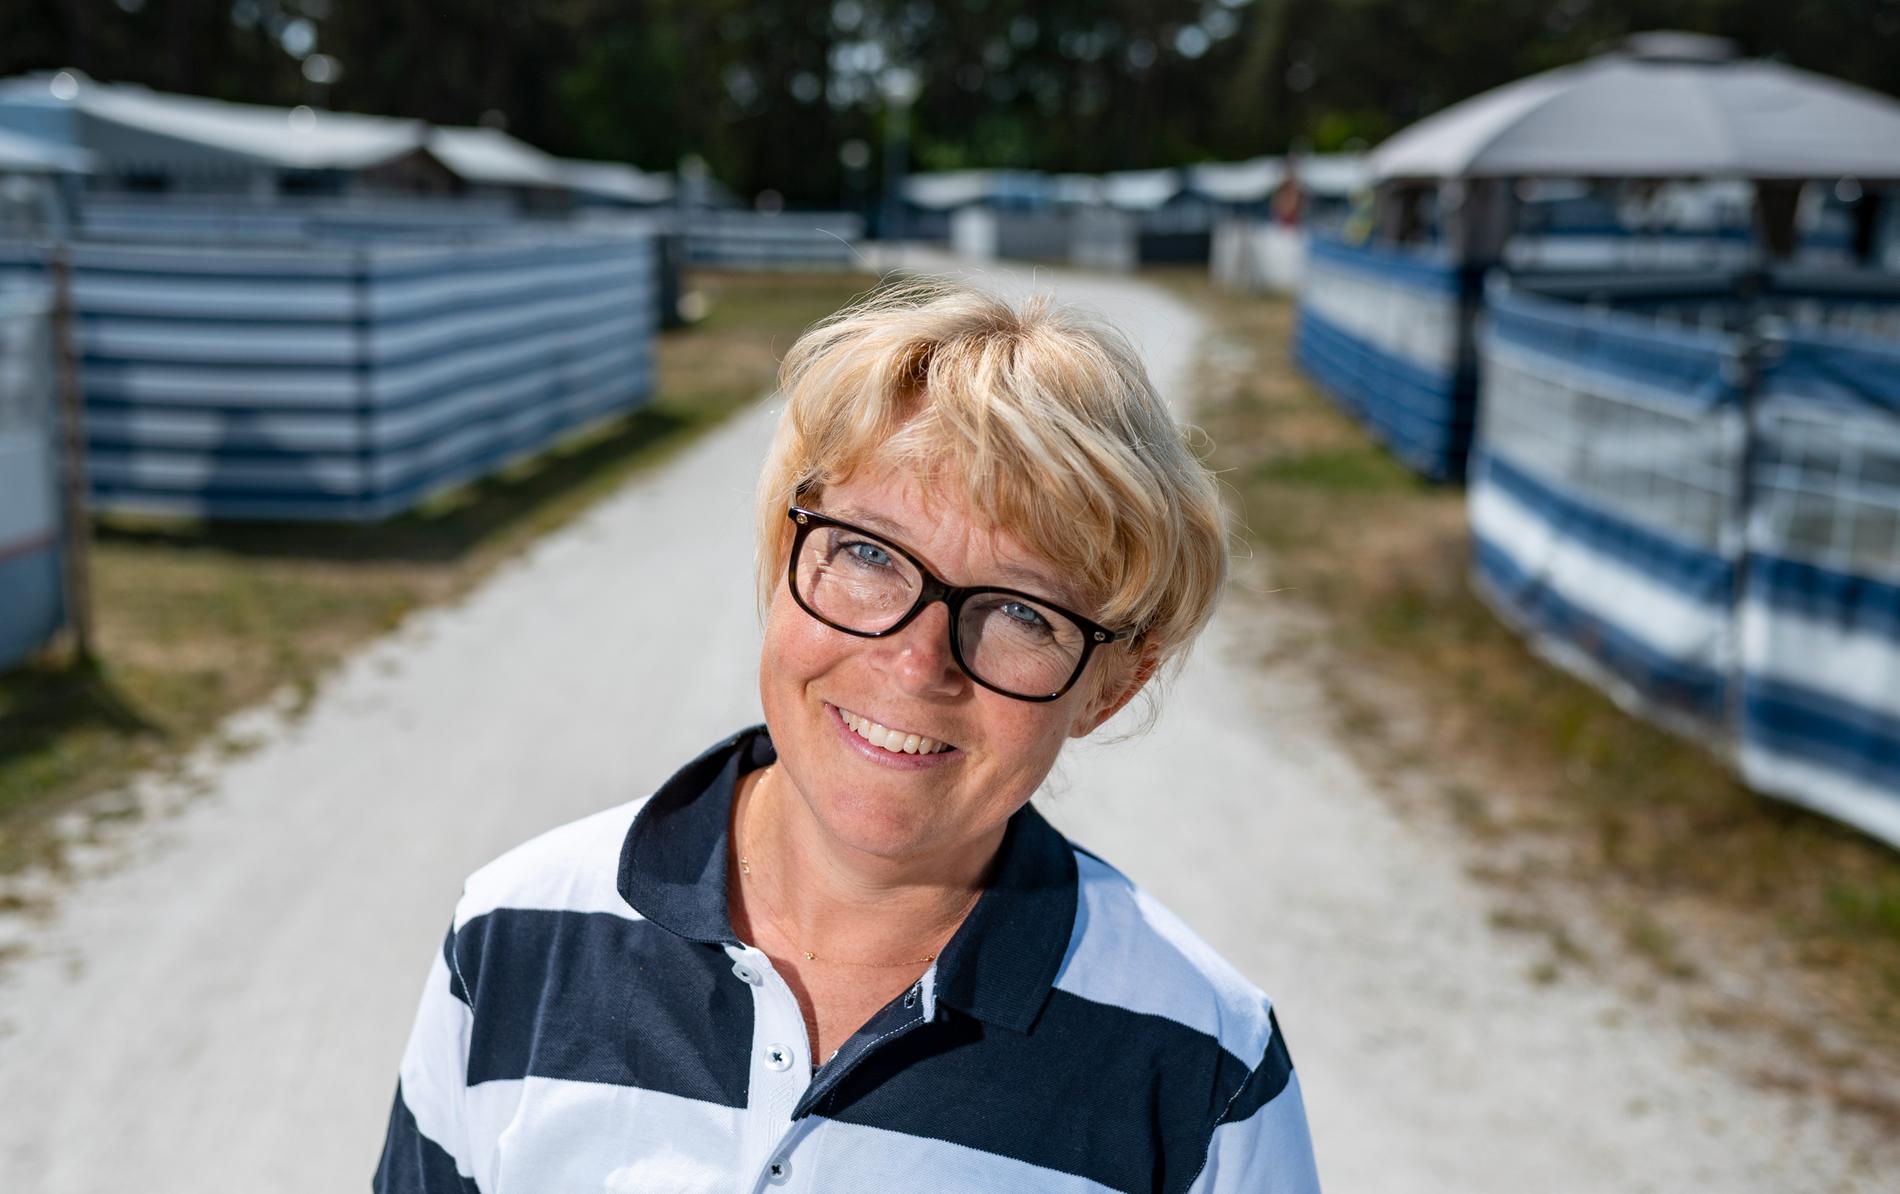 Sofia Ungh Persson som driver Borrbystrands camping på Österlen tillsammans med sin man Fredrik är glad och lättad över de ändrade reserekommendationerna.